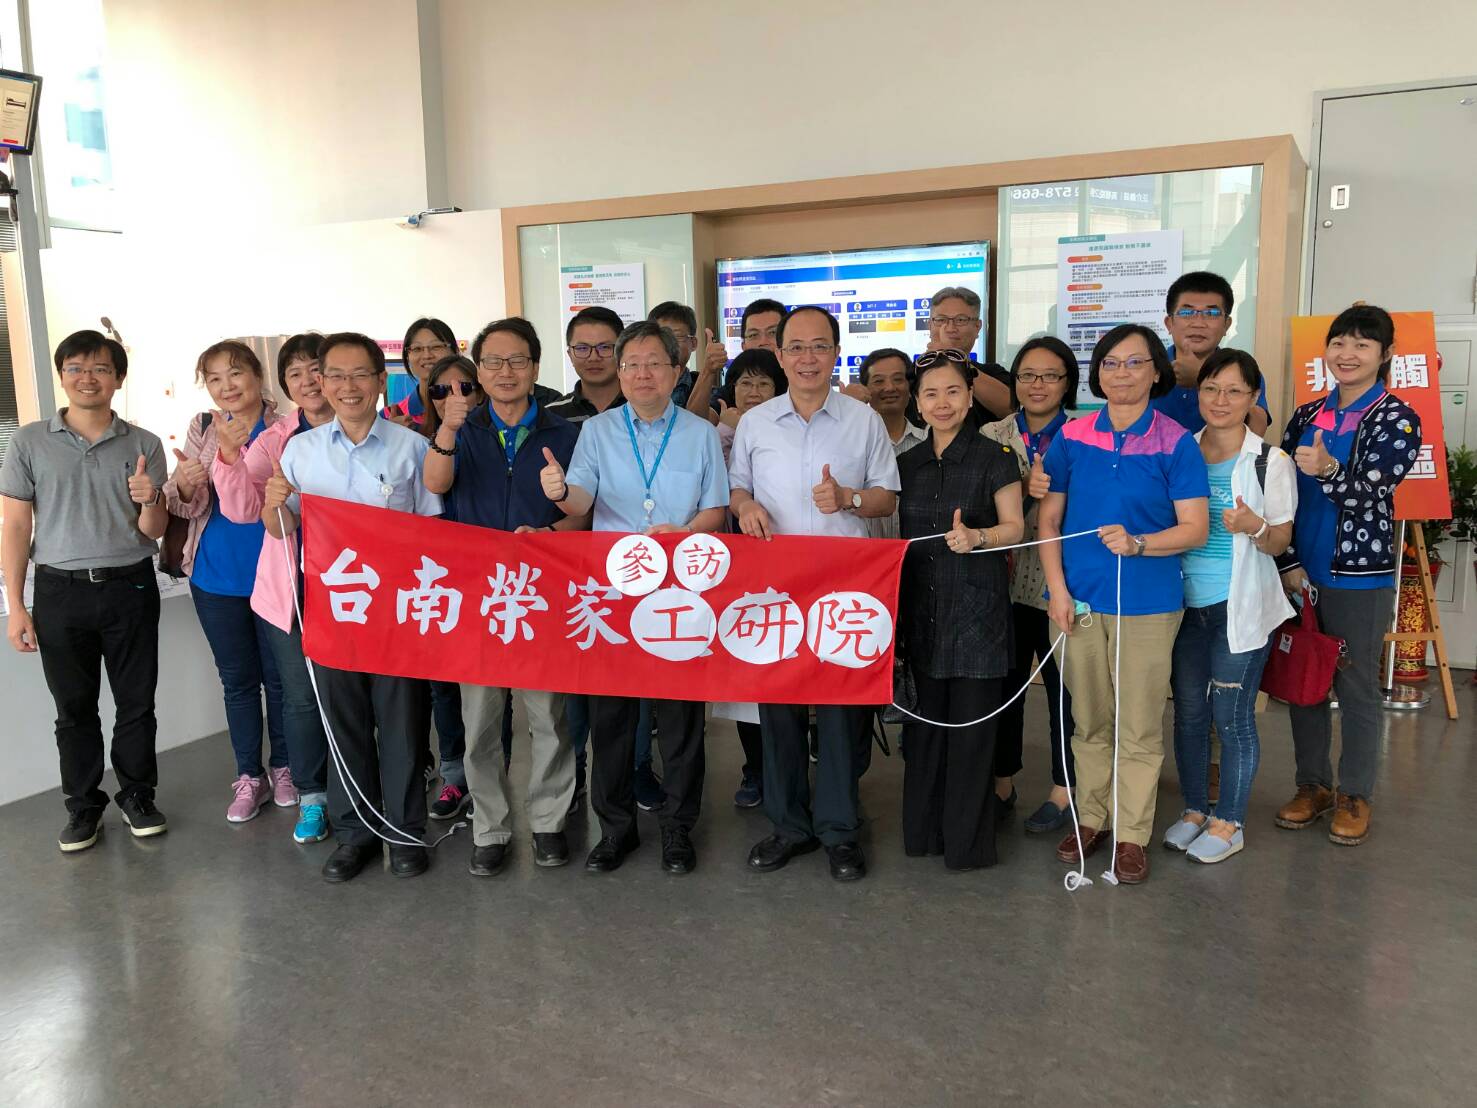 臺南榮家參訪工研院 銀髮智慧照護新體驗